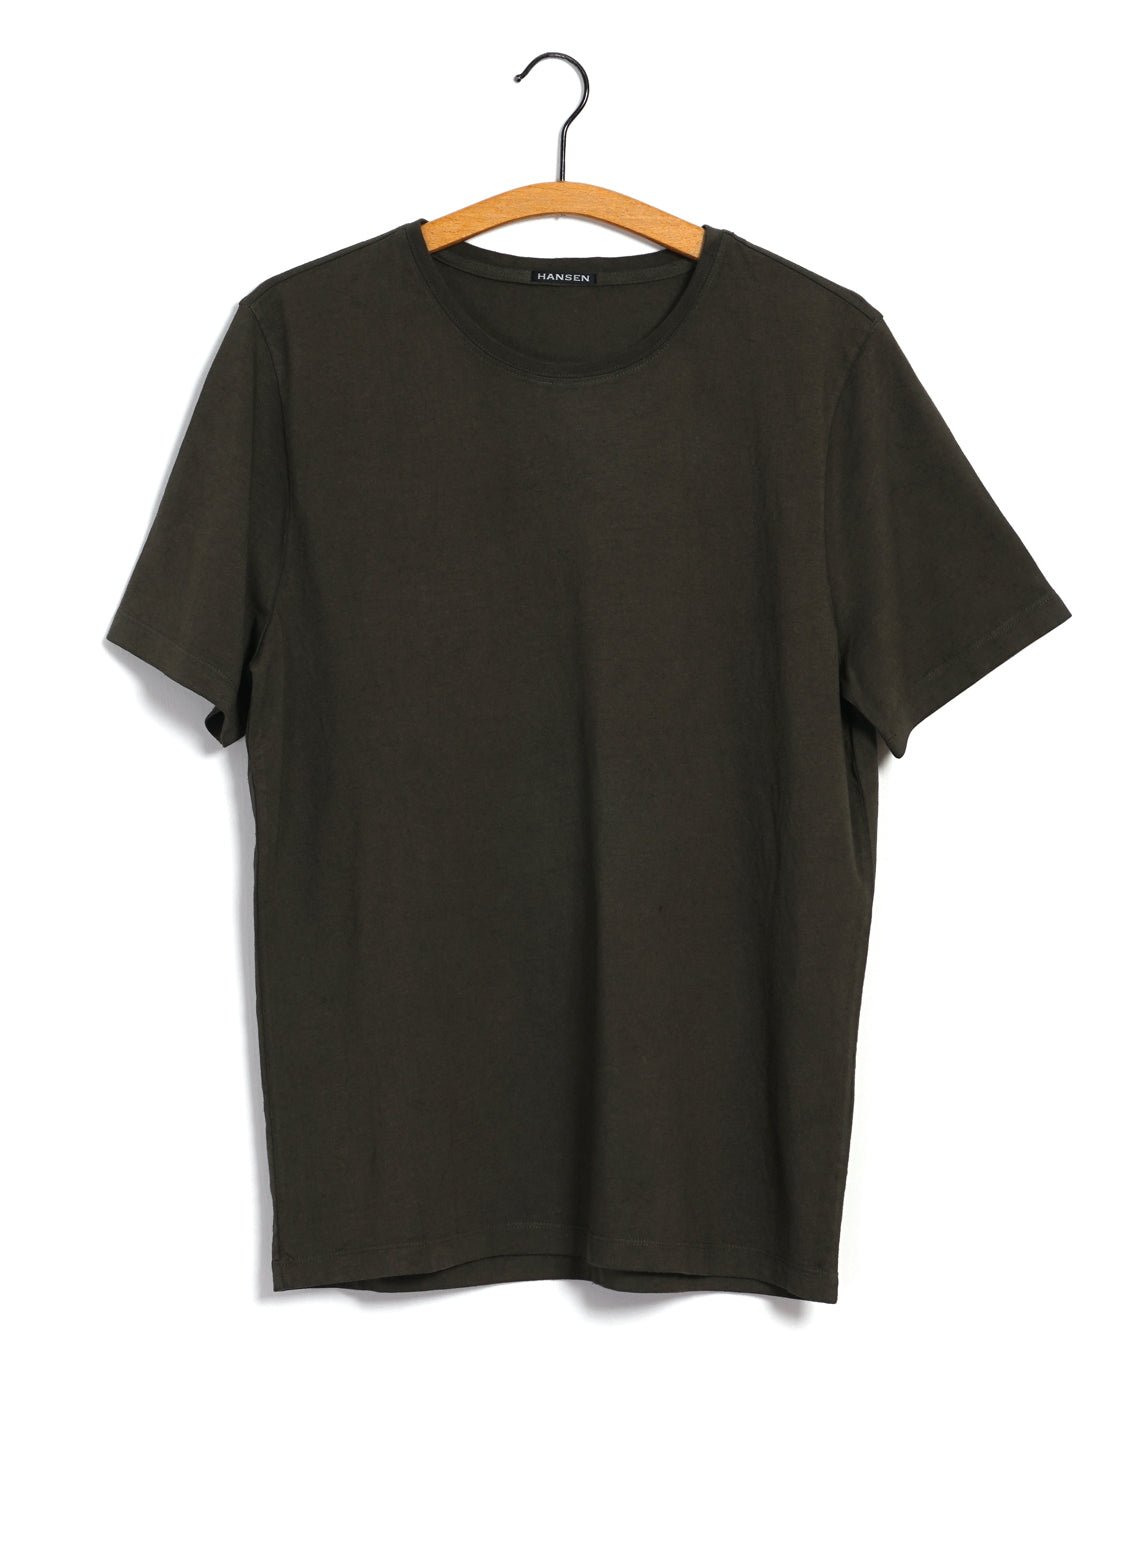 HANSEN GARMENTS - JULIAN | Crew Neck T-Shirt | Woods - HANSEN Garments